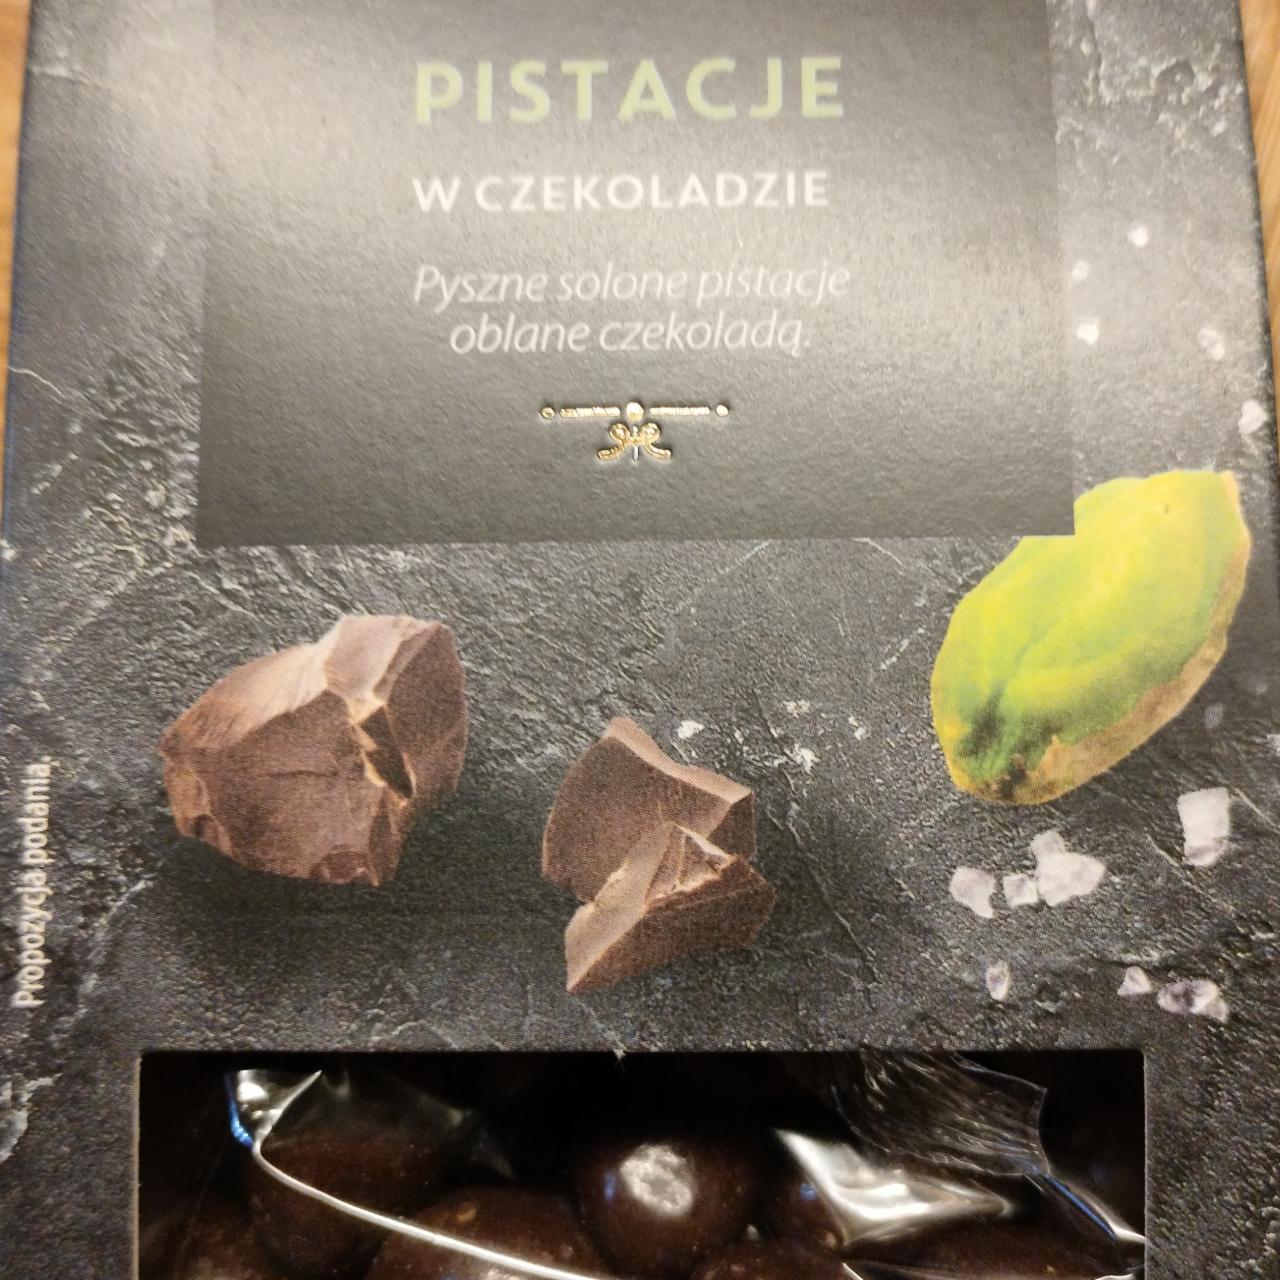 Zdjęcia - Pistacje prażone solone w czekoladzie Biedronka